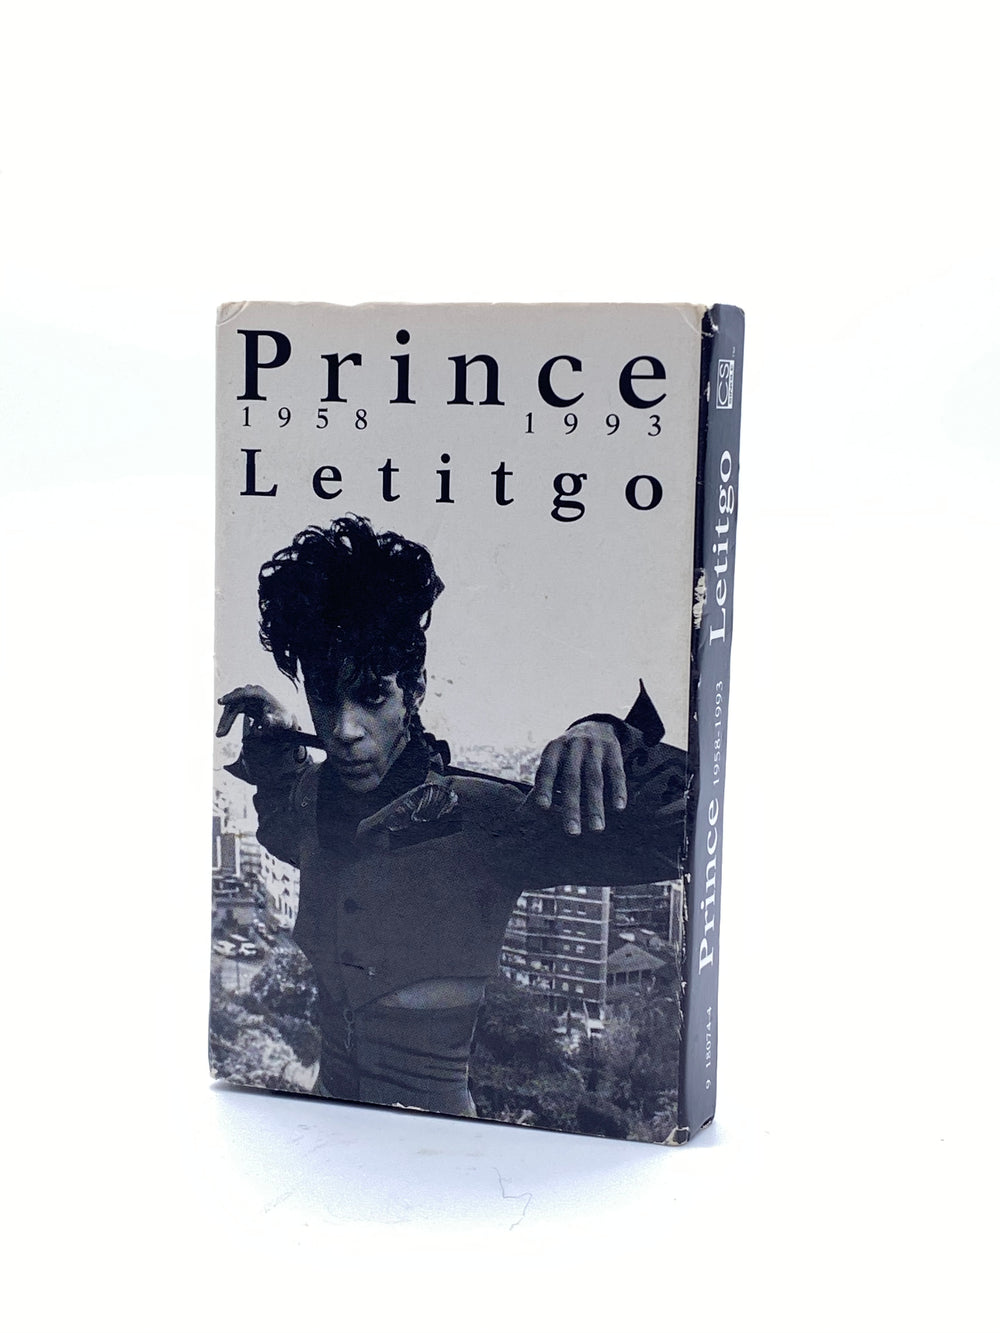 Prince – Letitgo  Cassette Single US Preloved: 1994